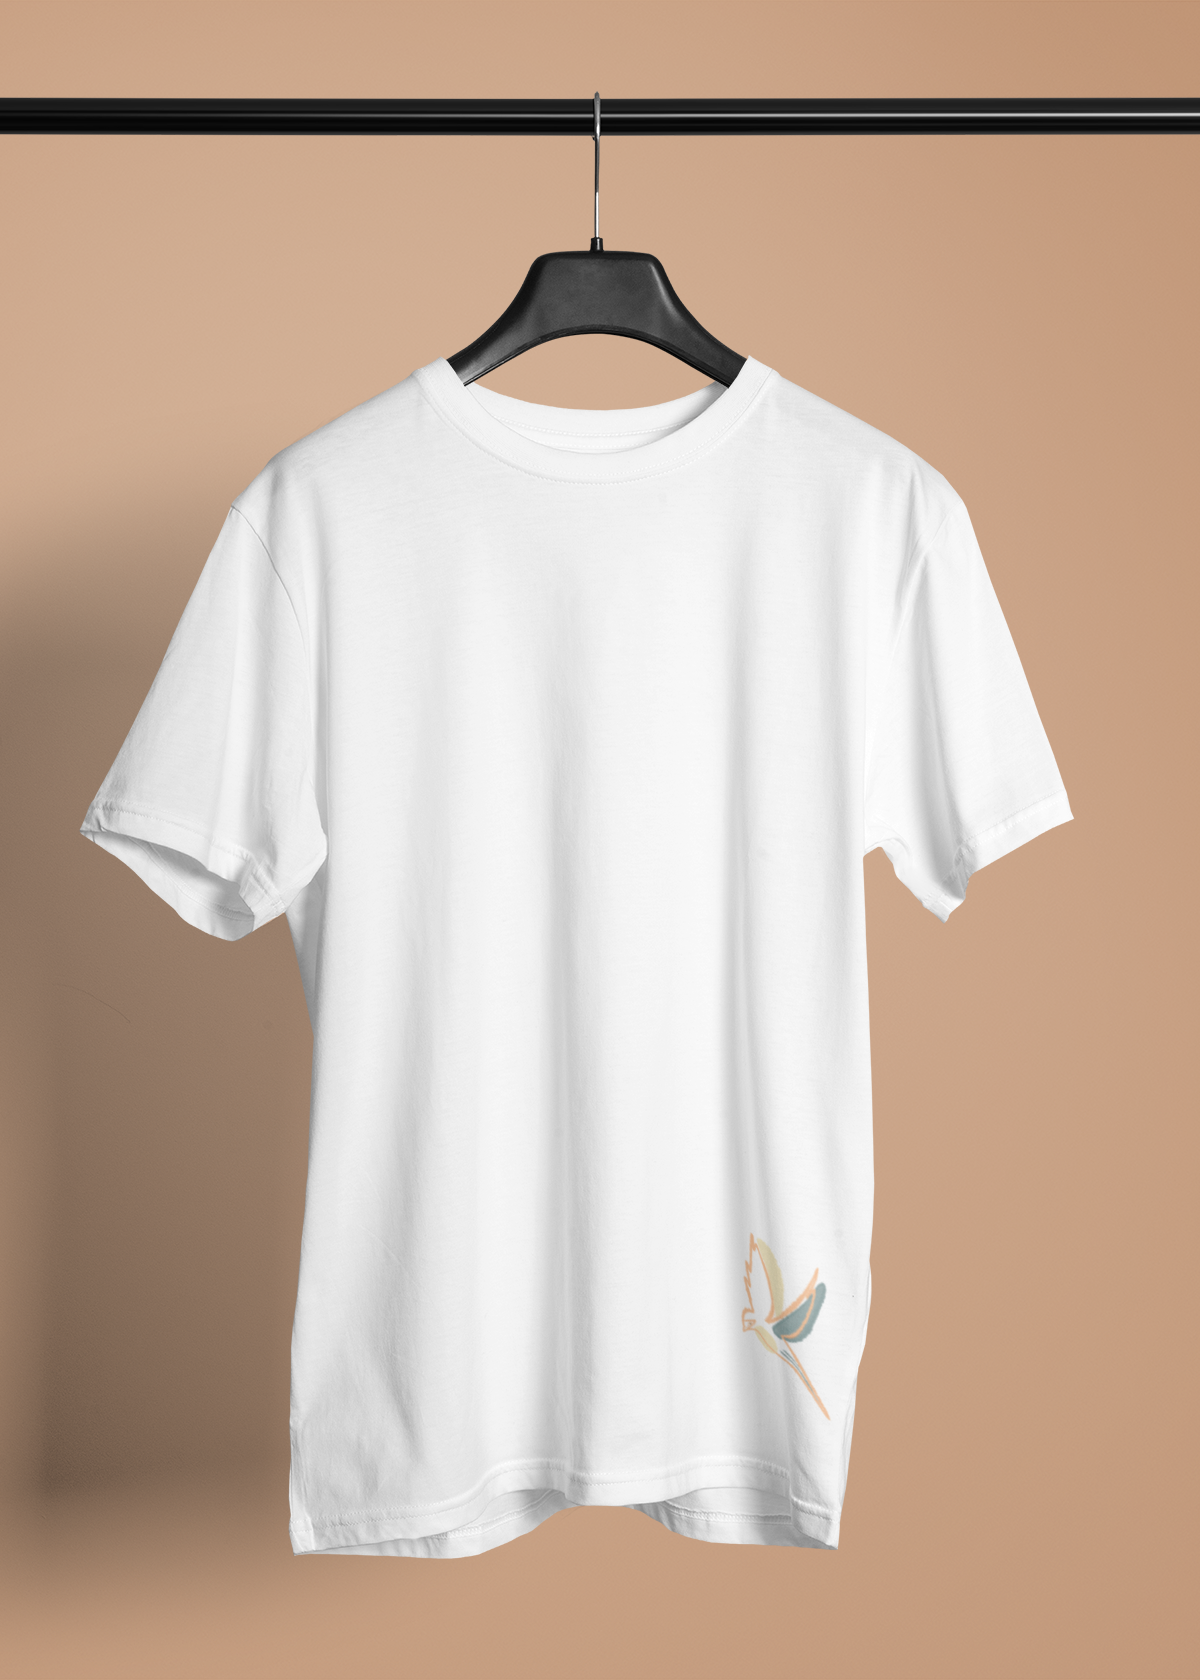 'Free Bird' Özel tasarım Etek ucu baskılı Bisiklet yaka Beyaz T-shirt